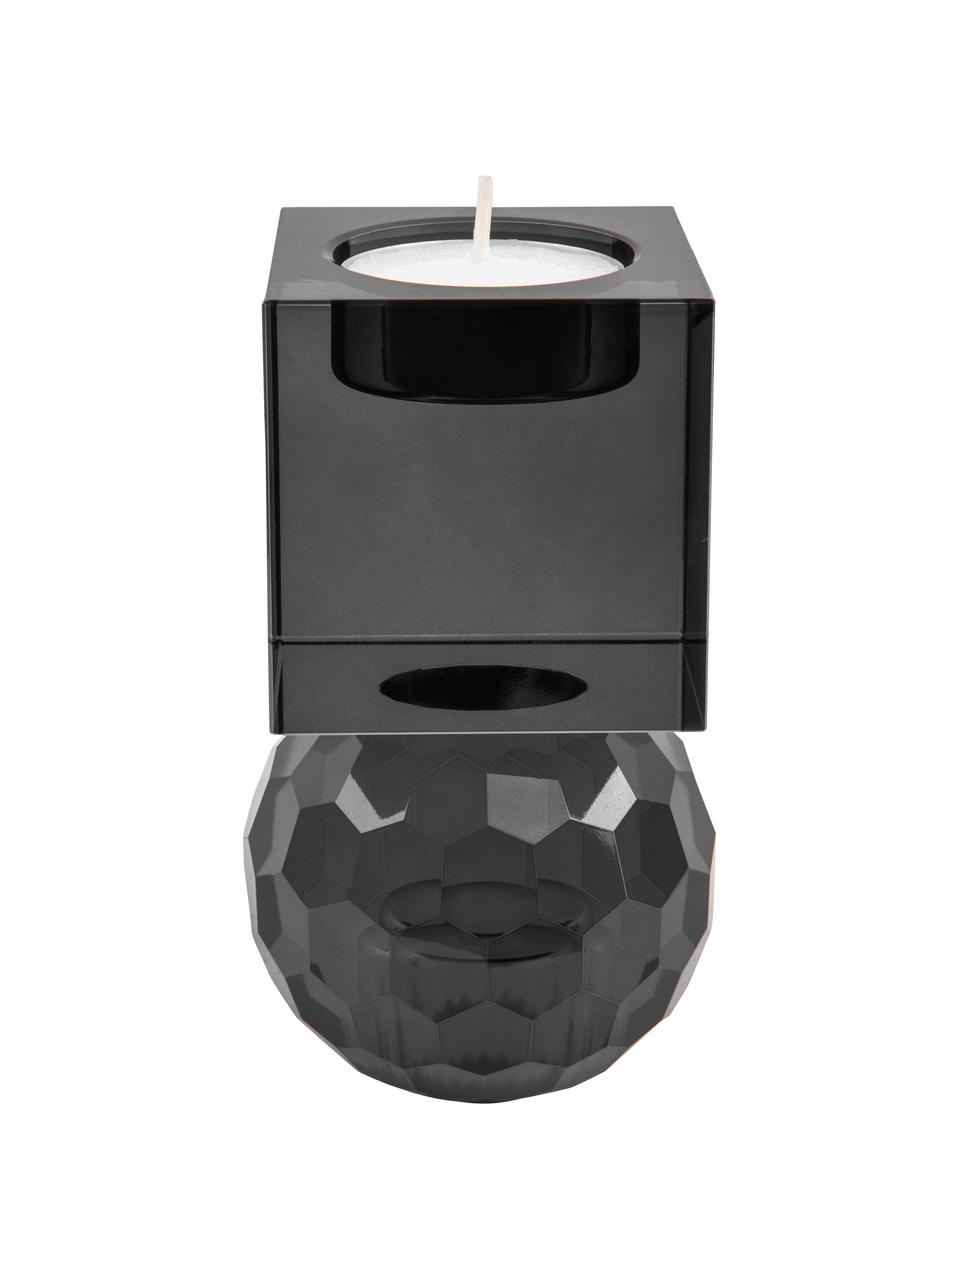 Candelabro reversible para velas cónicas y tealight Crystal, Vidrio, Gris, An 6 x Al 13 cm